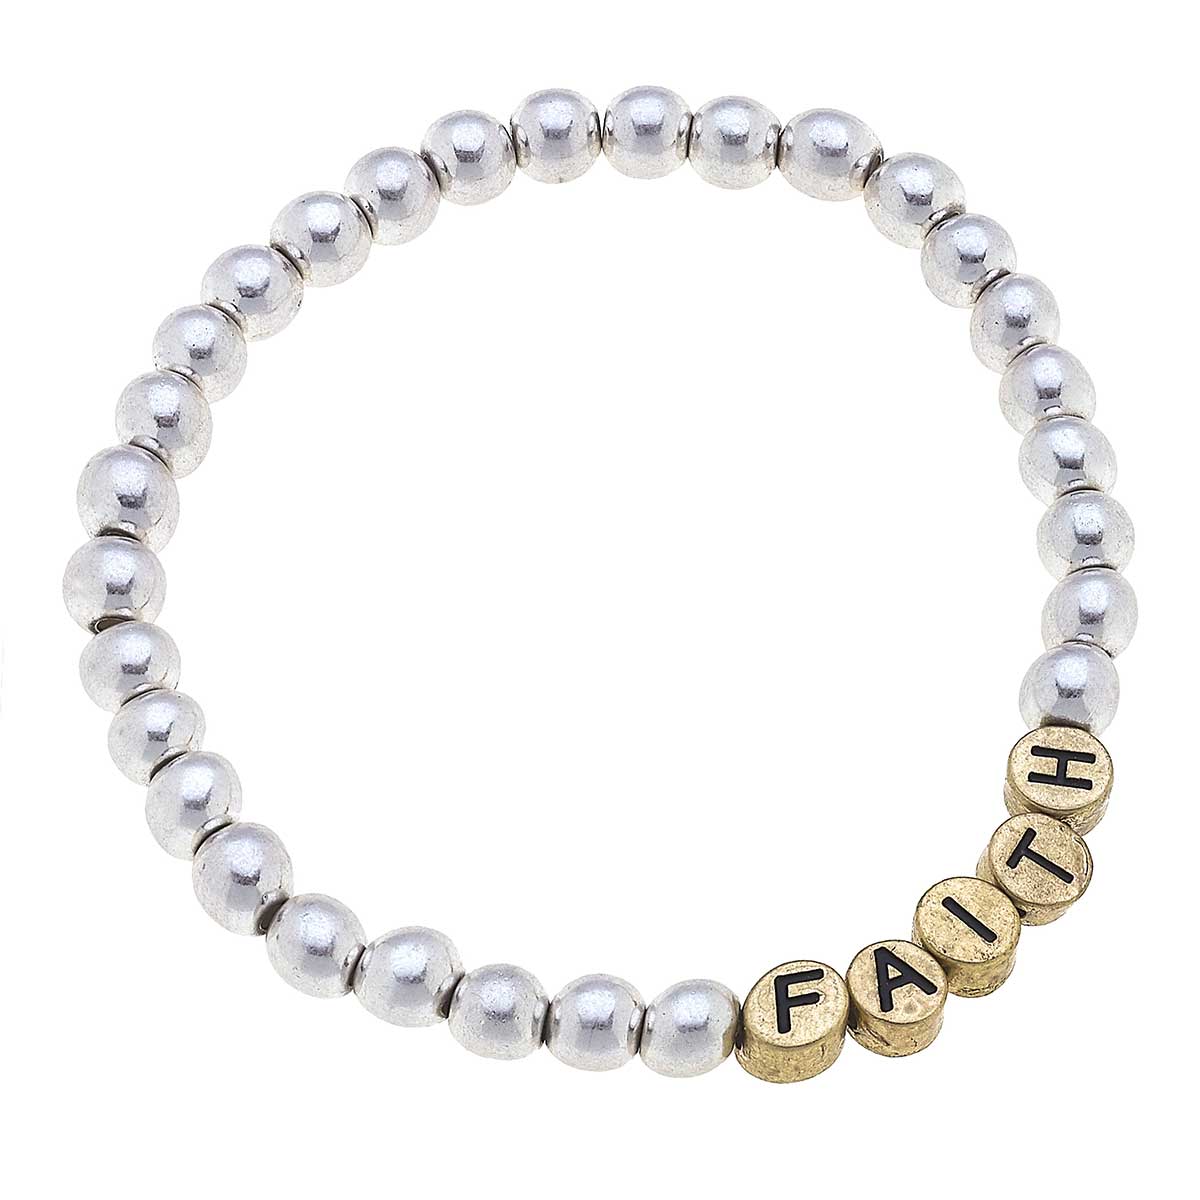 Faith Ball Bead Bracelet in Worn Silver